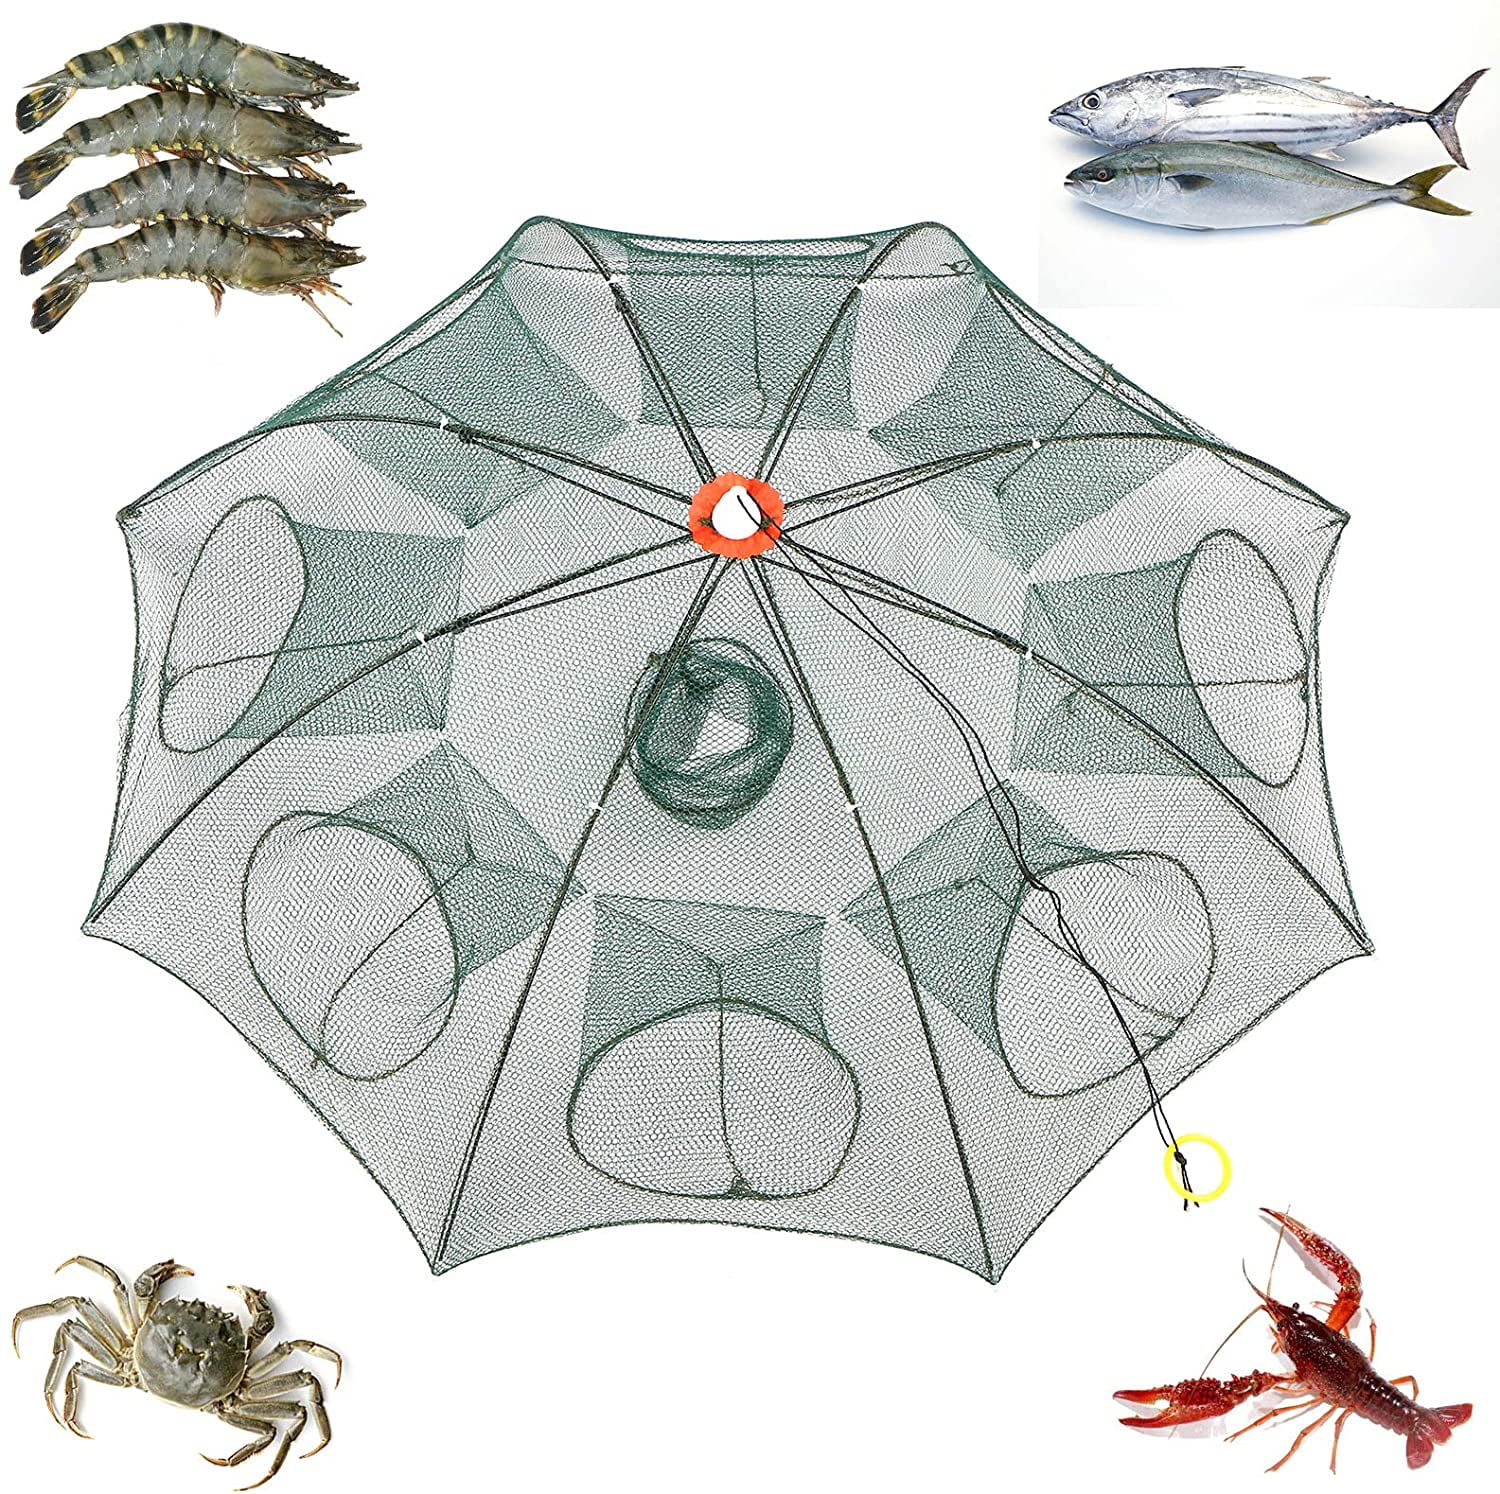 Details about   Fishing Bait Trap Cast Dip Net Cage Crab Fish Minnow Crawdad Shrimp Foldable I 